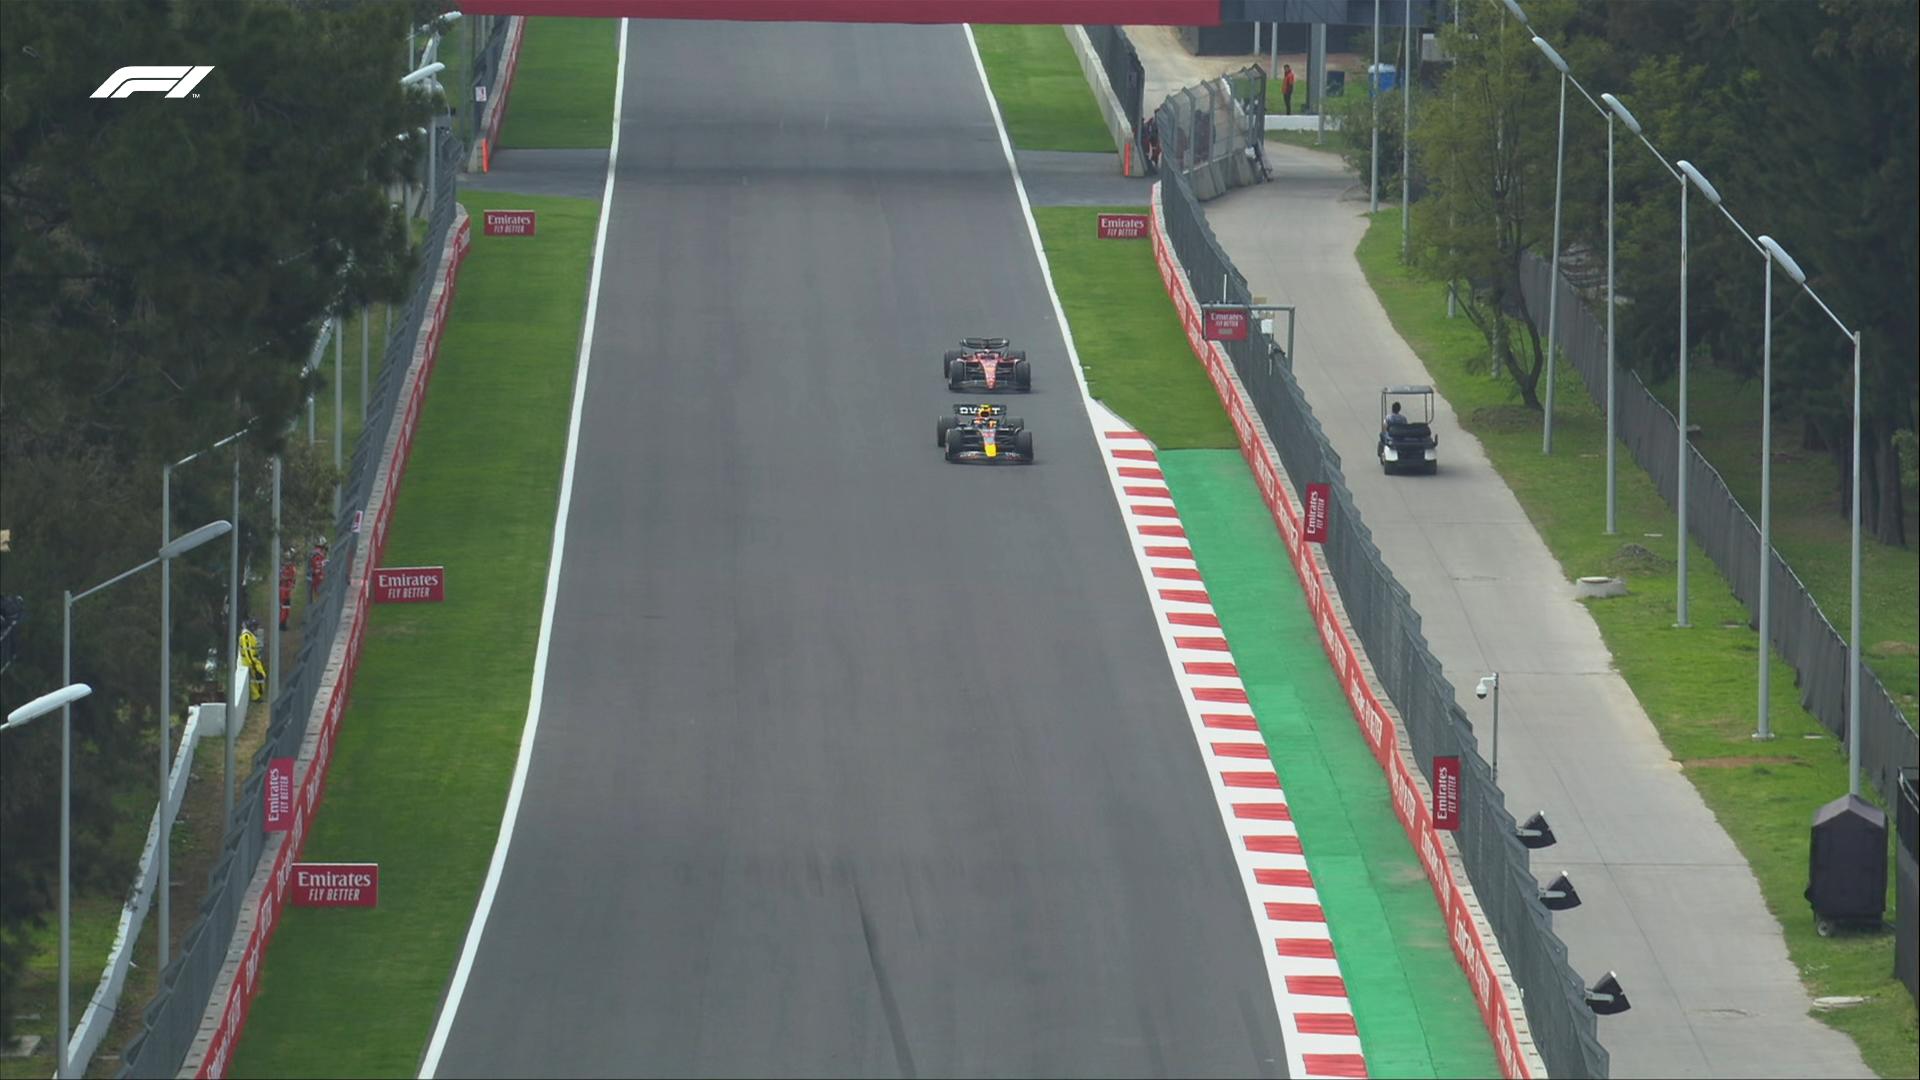 $!Checo Pérez sube al podio en el Gran Premio de México; Max Verstappen gana